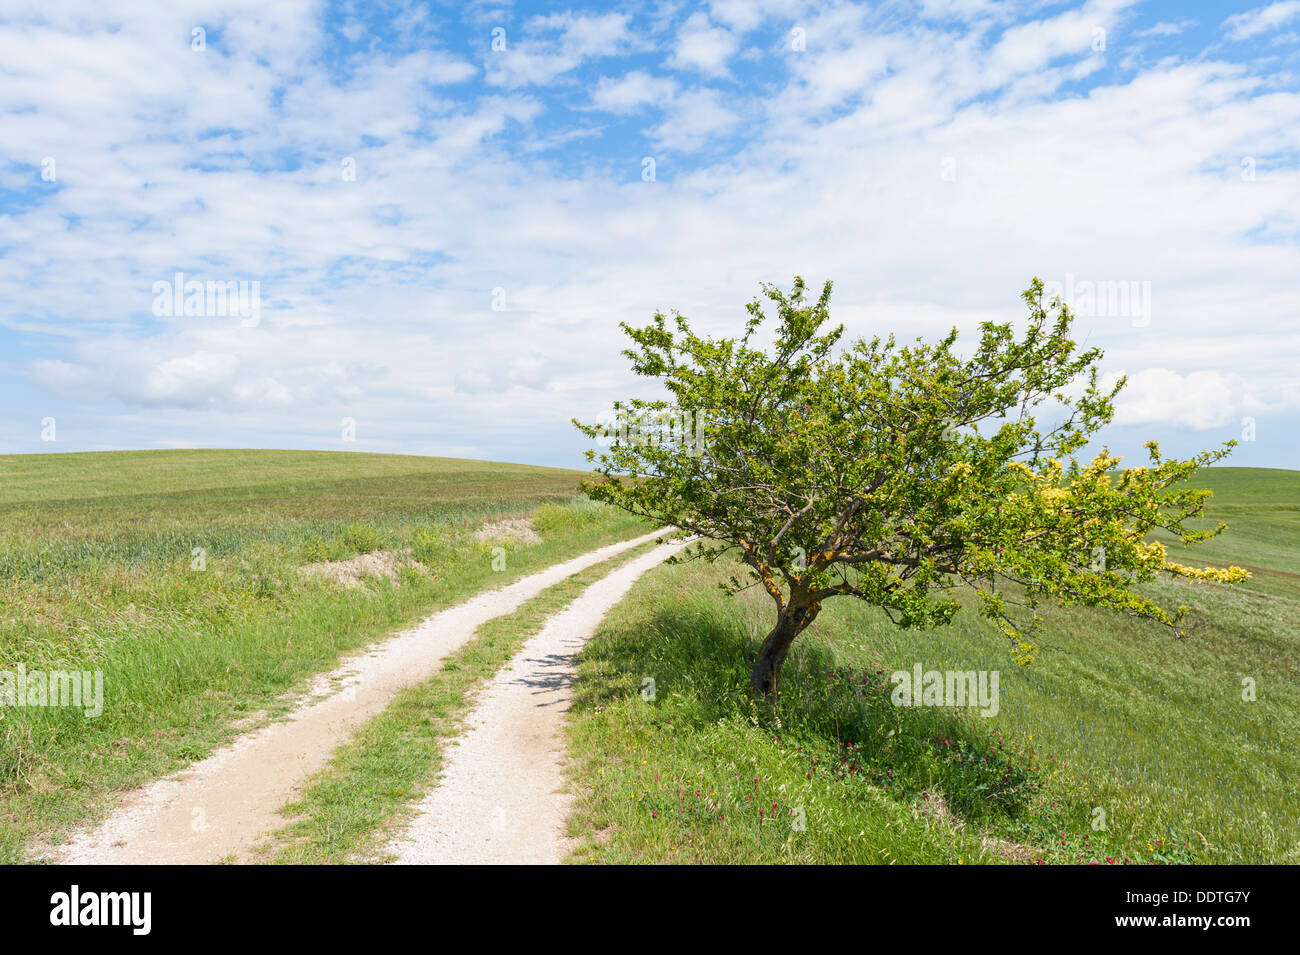 Lone tree along rural road in Tuscany Italy Stock Photo